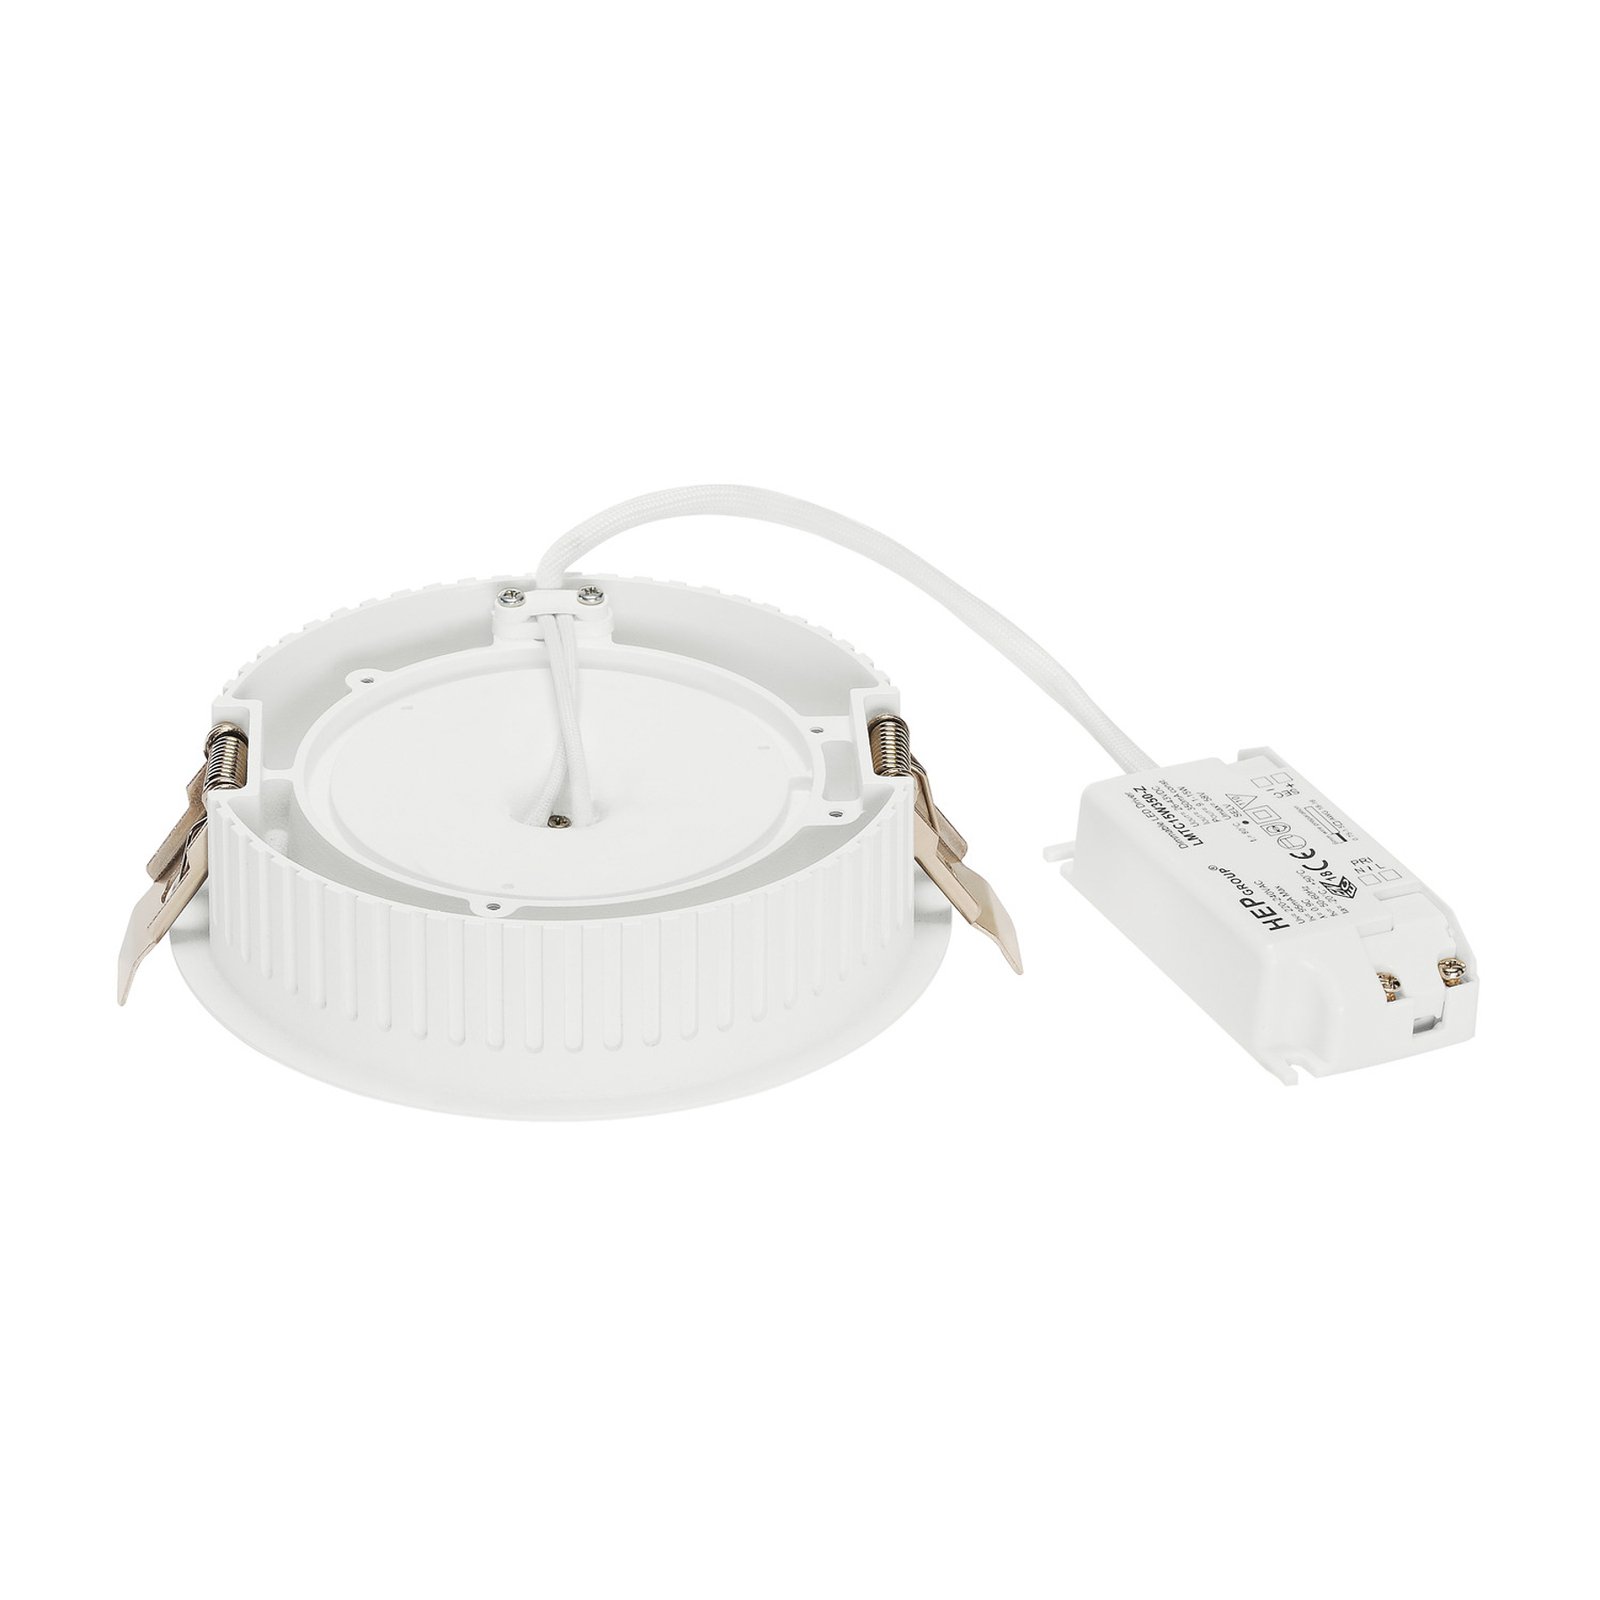 SLV Occuldas 14 luci da incasso a LED, bianco, alluminio, Ø 14 cm